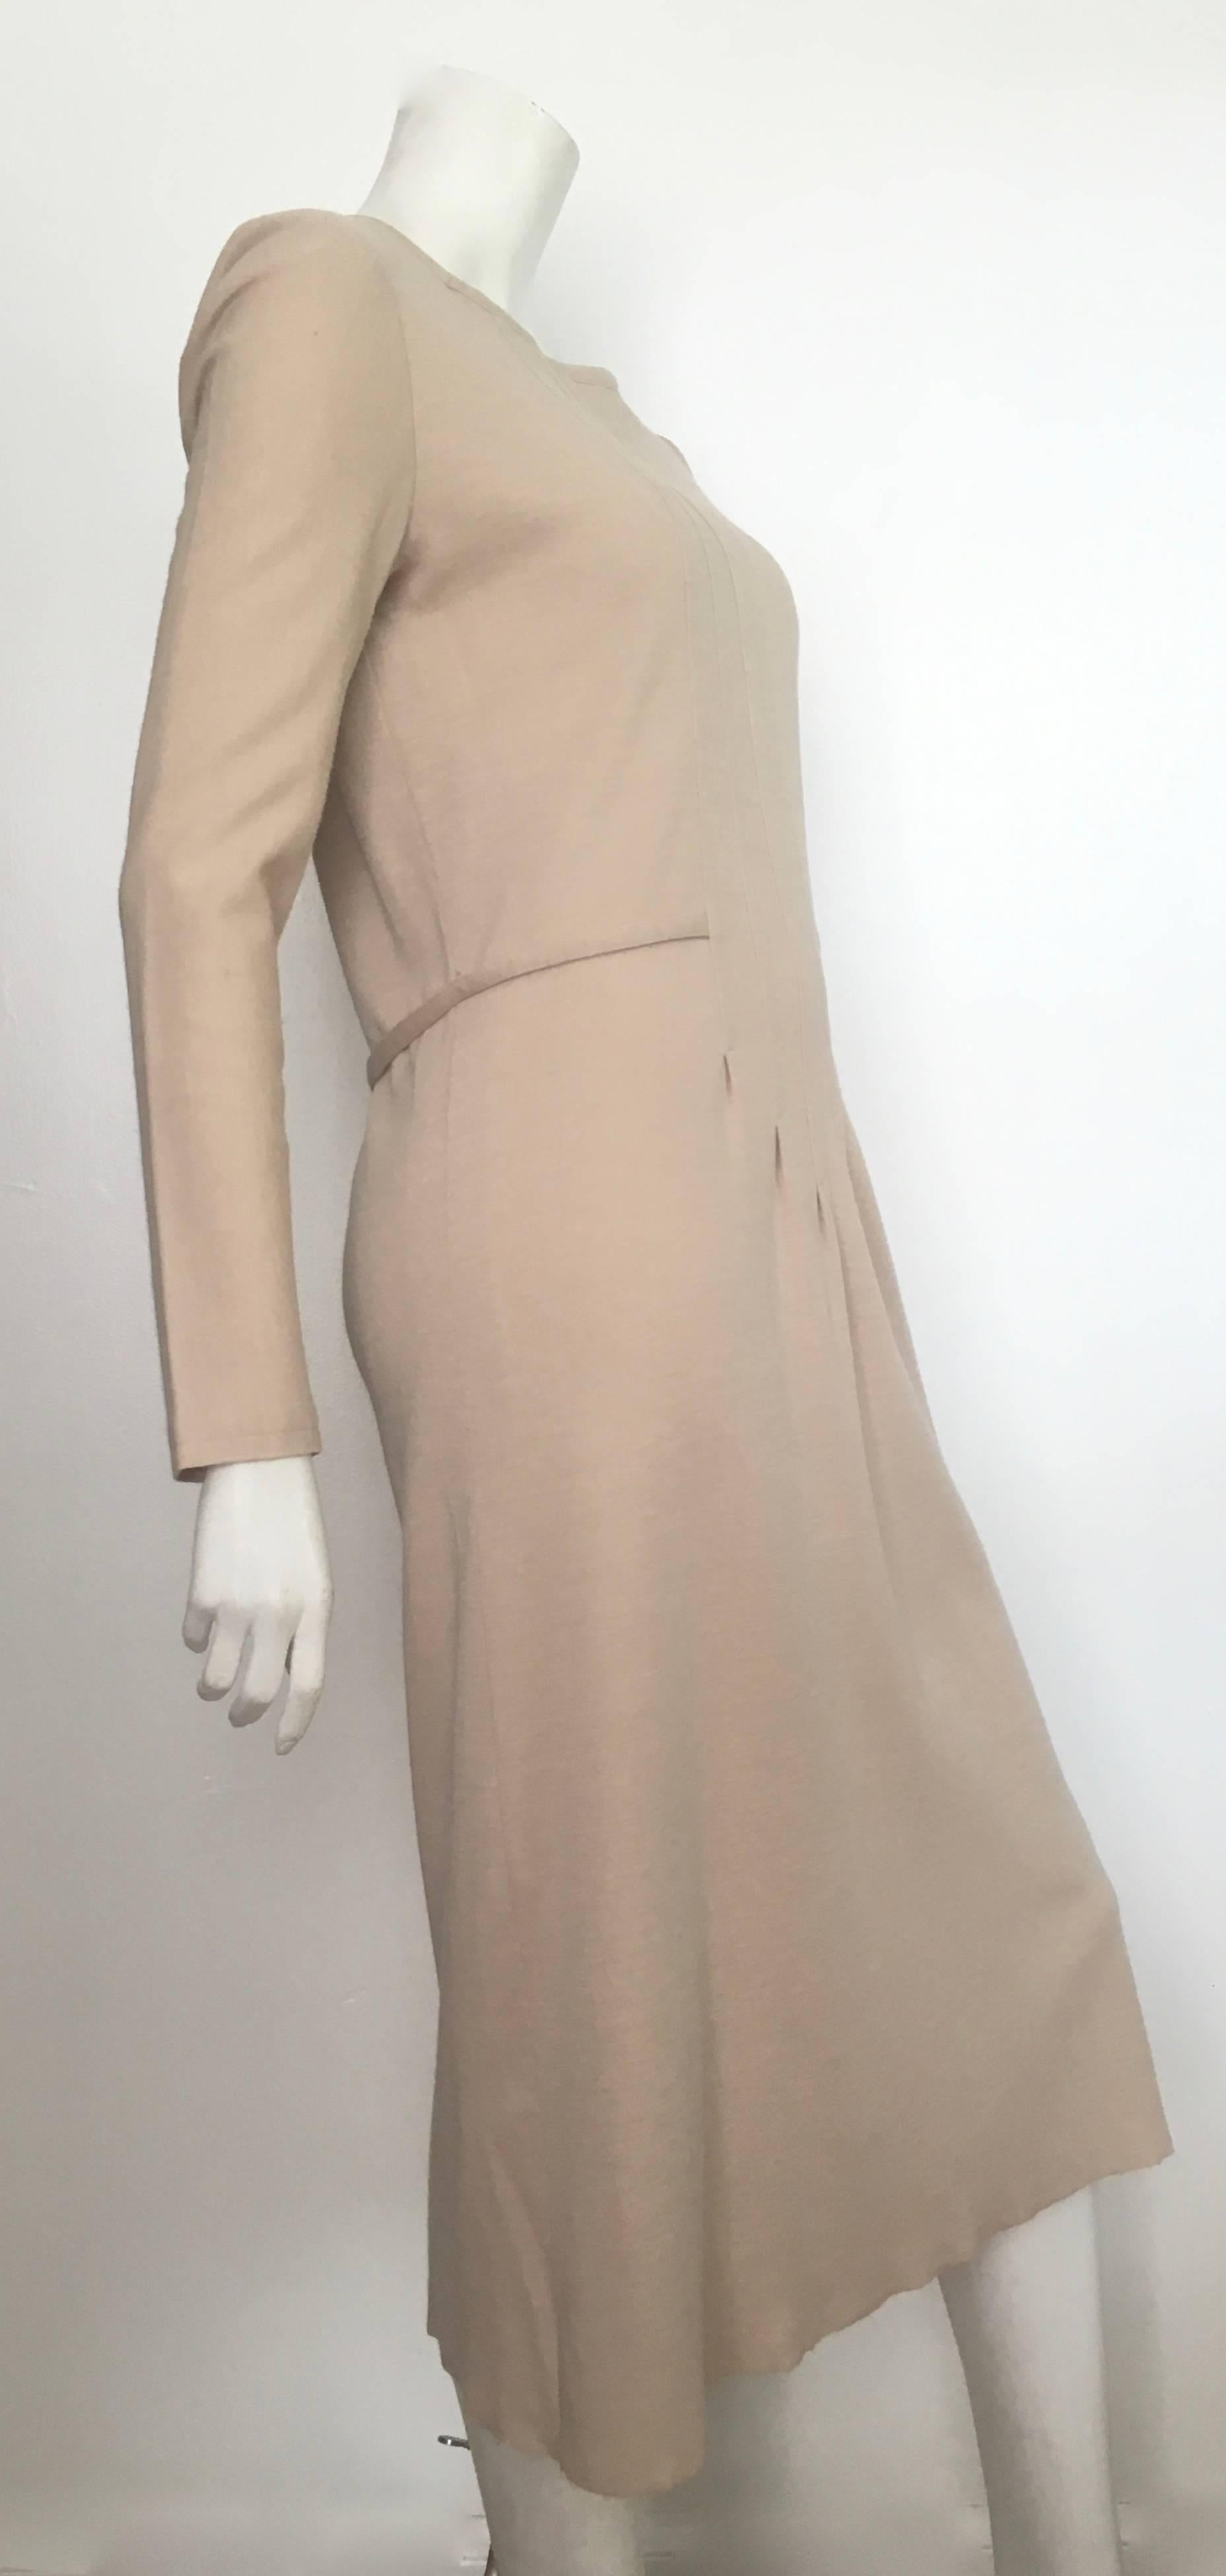 Geoffrey Beene Boutique 1970s Wool Knit Tan Long Sleeve Dress Size 8. For Sale 2